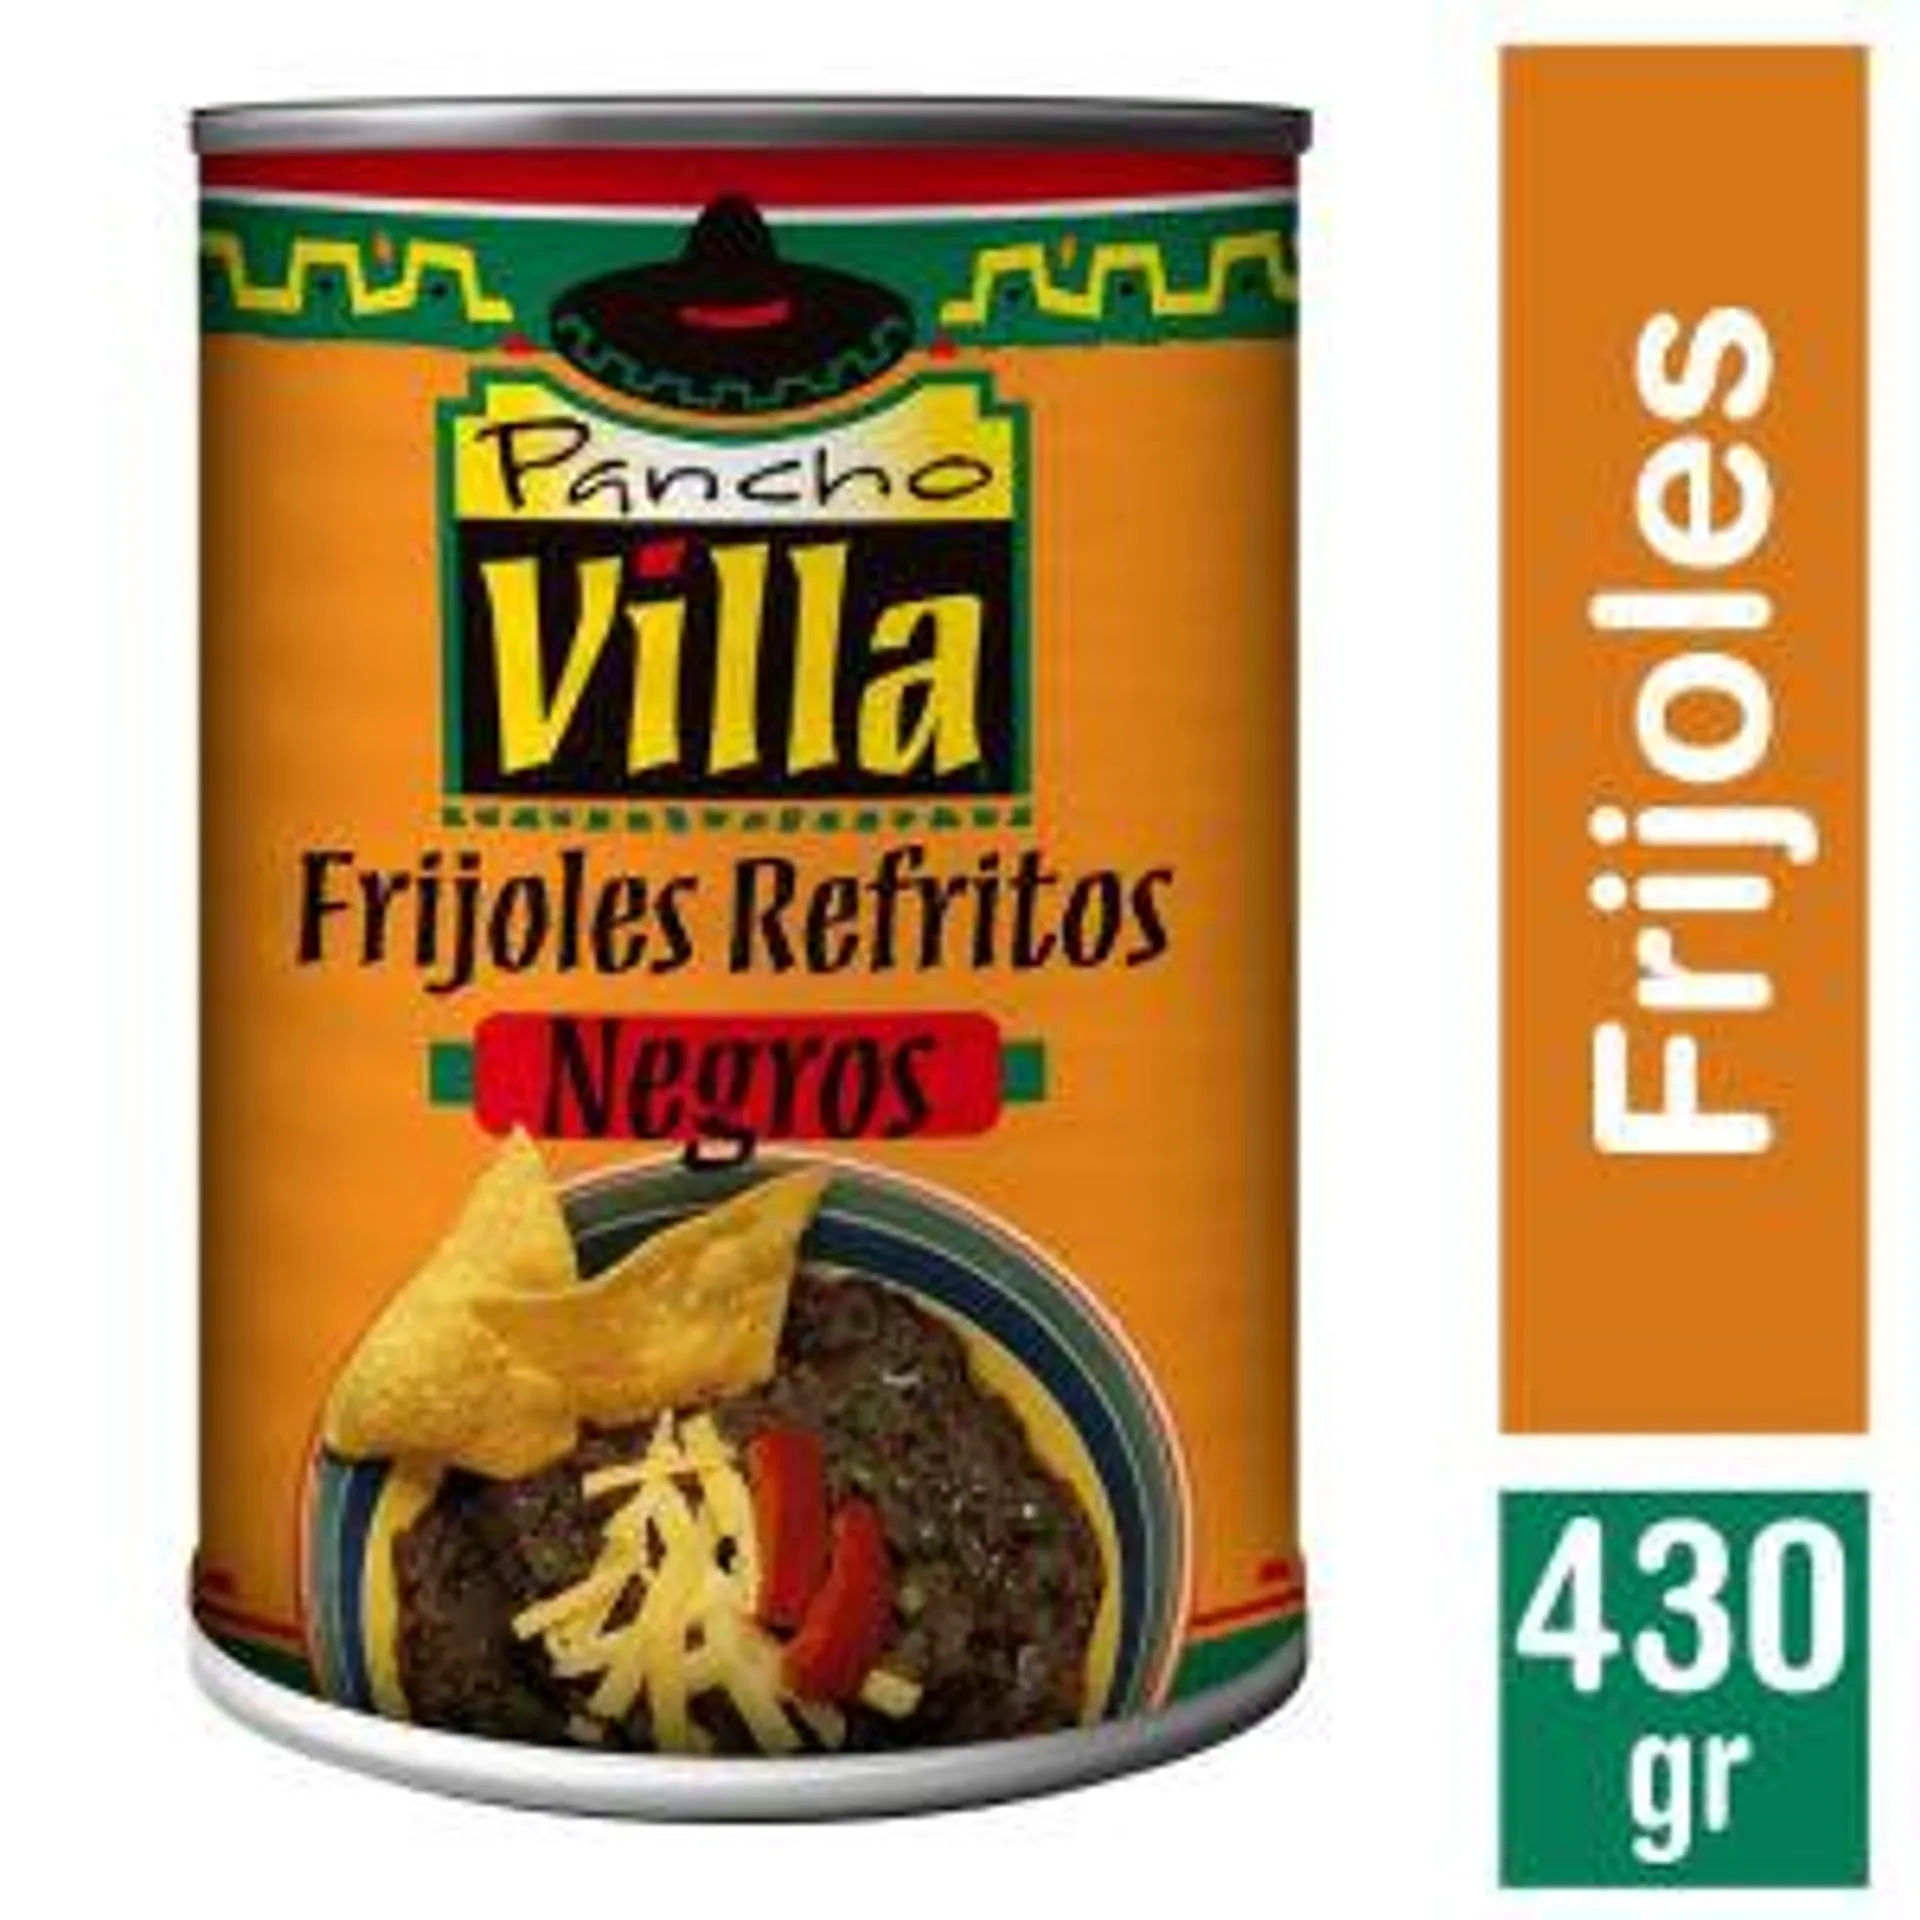 Frijoles Refritos Negros, 430 g